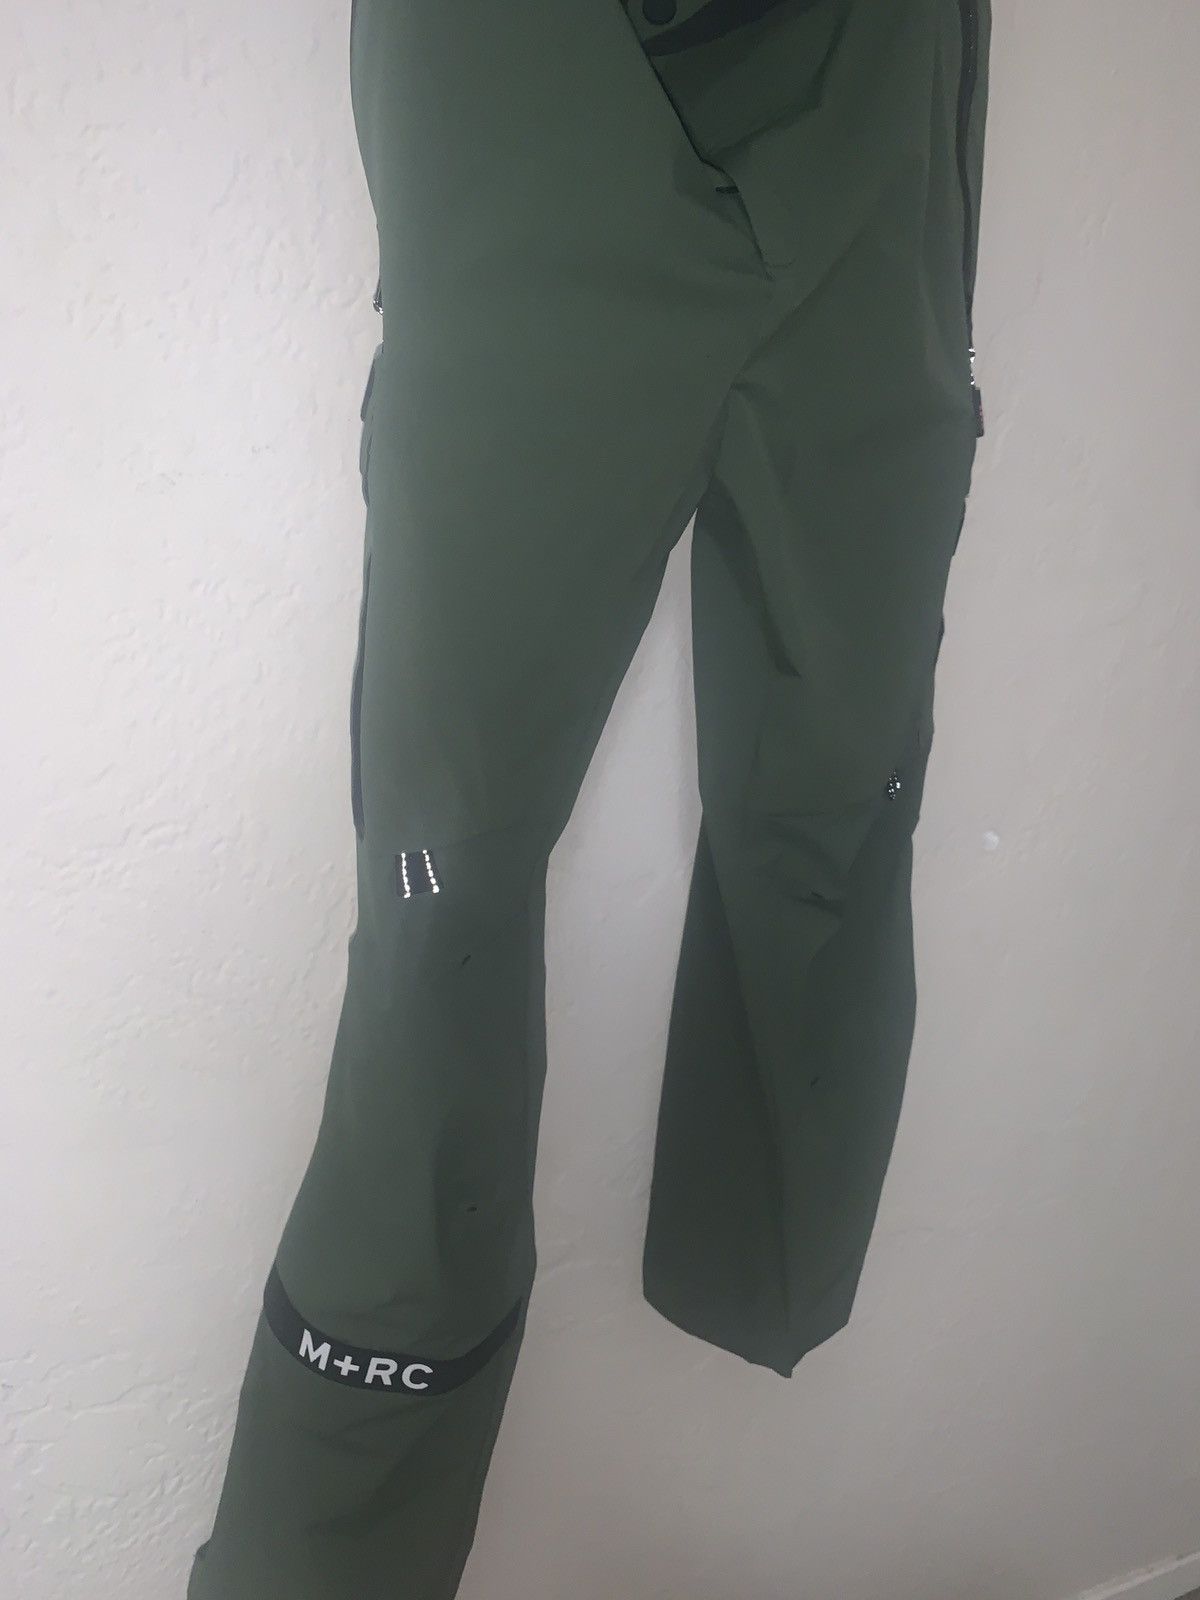 Mrc Noir Pants | Grailed